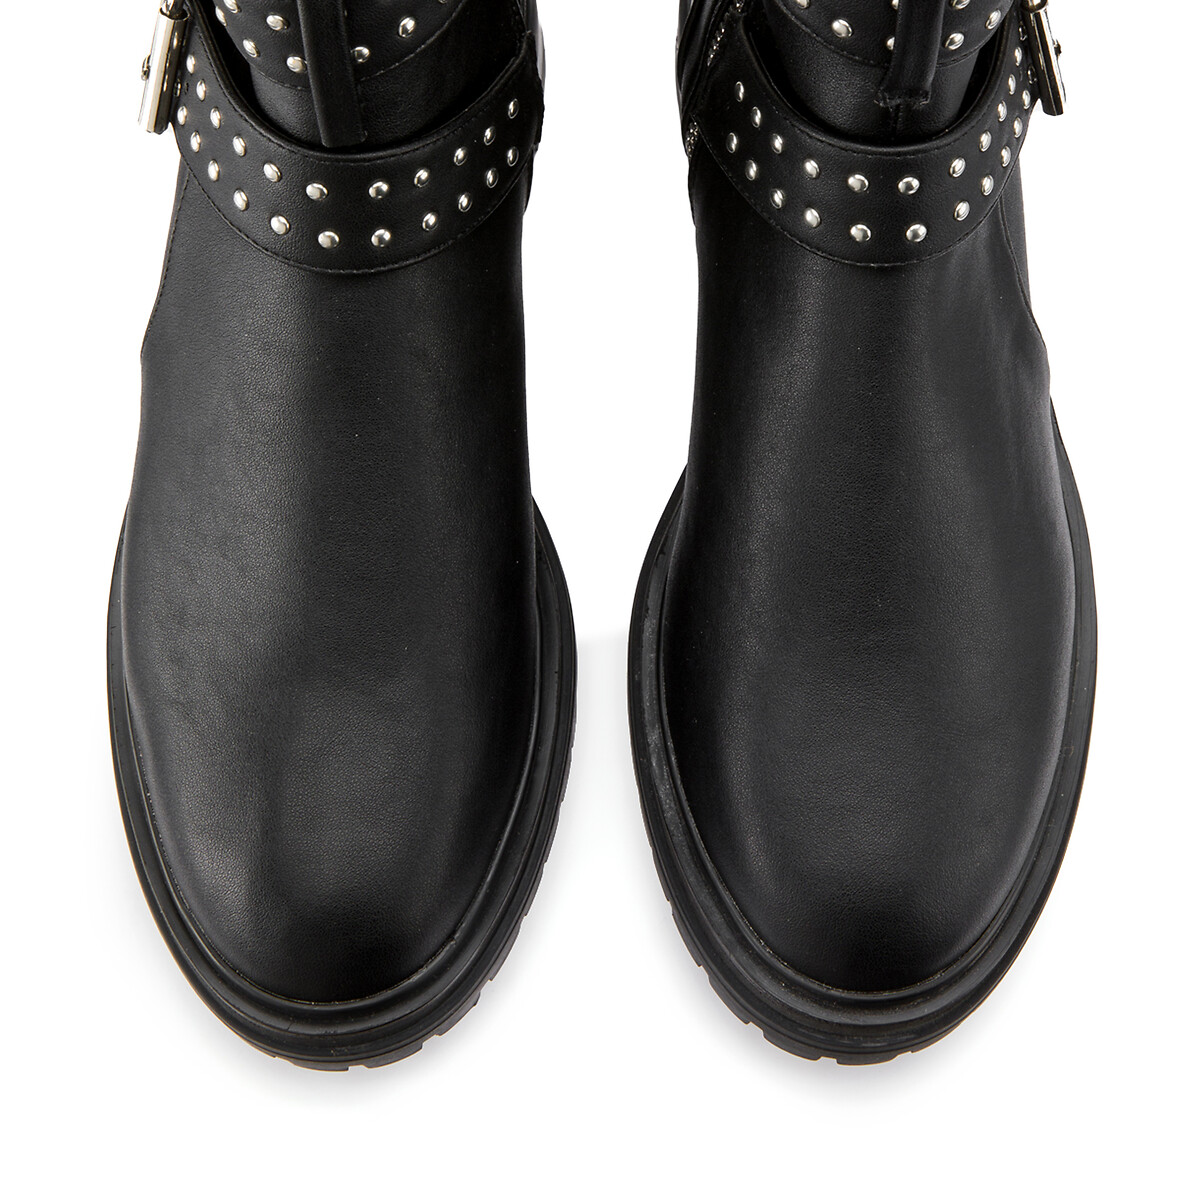 Ботинки LaRedoute На низком каблуке с пряжками для широкой стопы 38-45 45 черный, размер 45 - фото 3